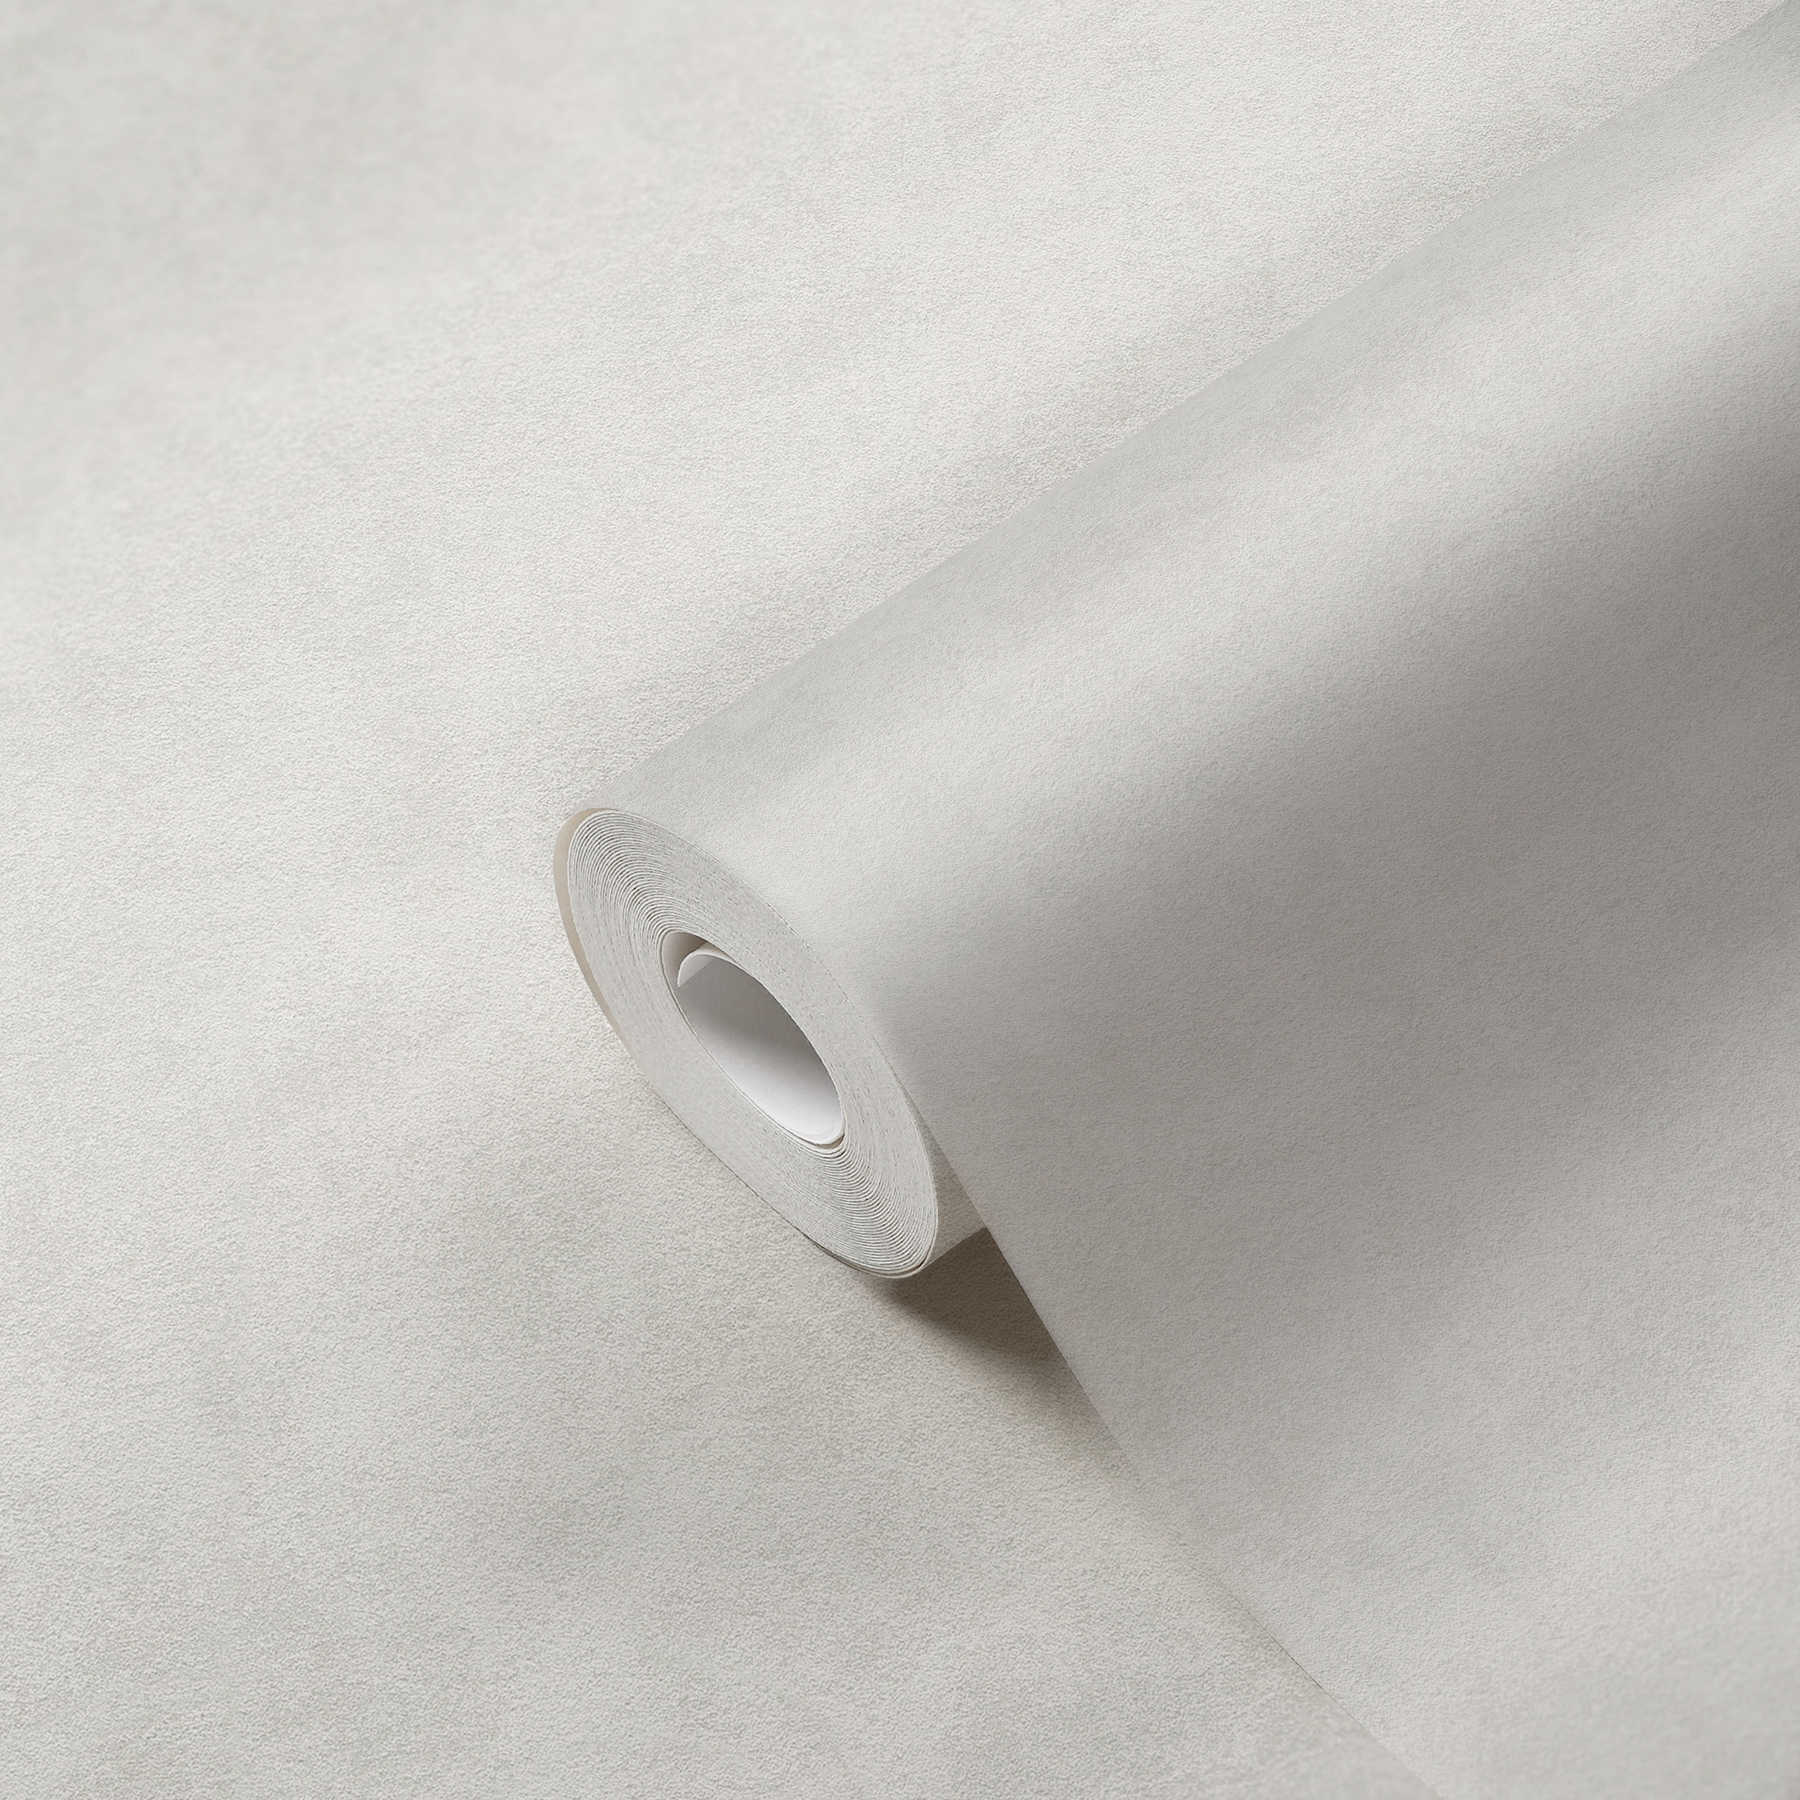             Carta da parati liscia grigio chiaro sfumato con struttura in rilievo
        